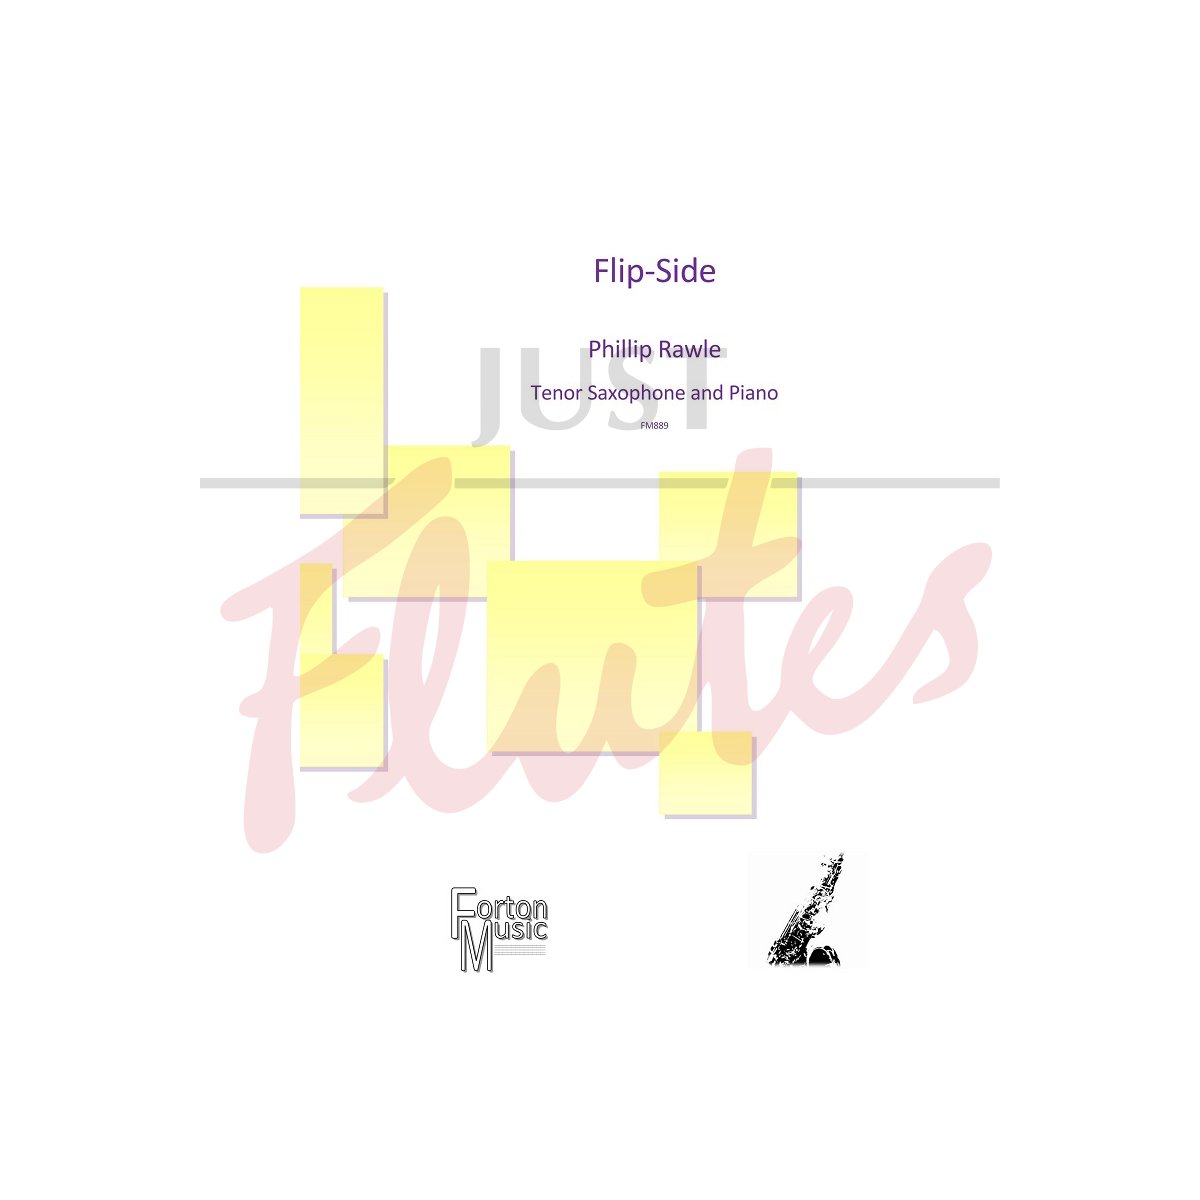 Flip-Side